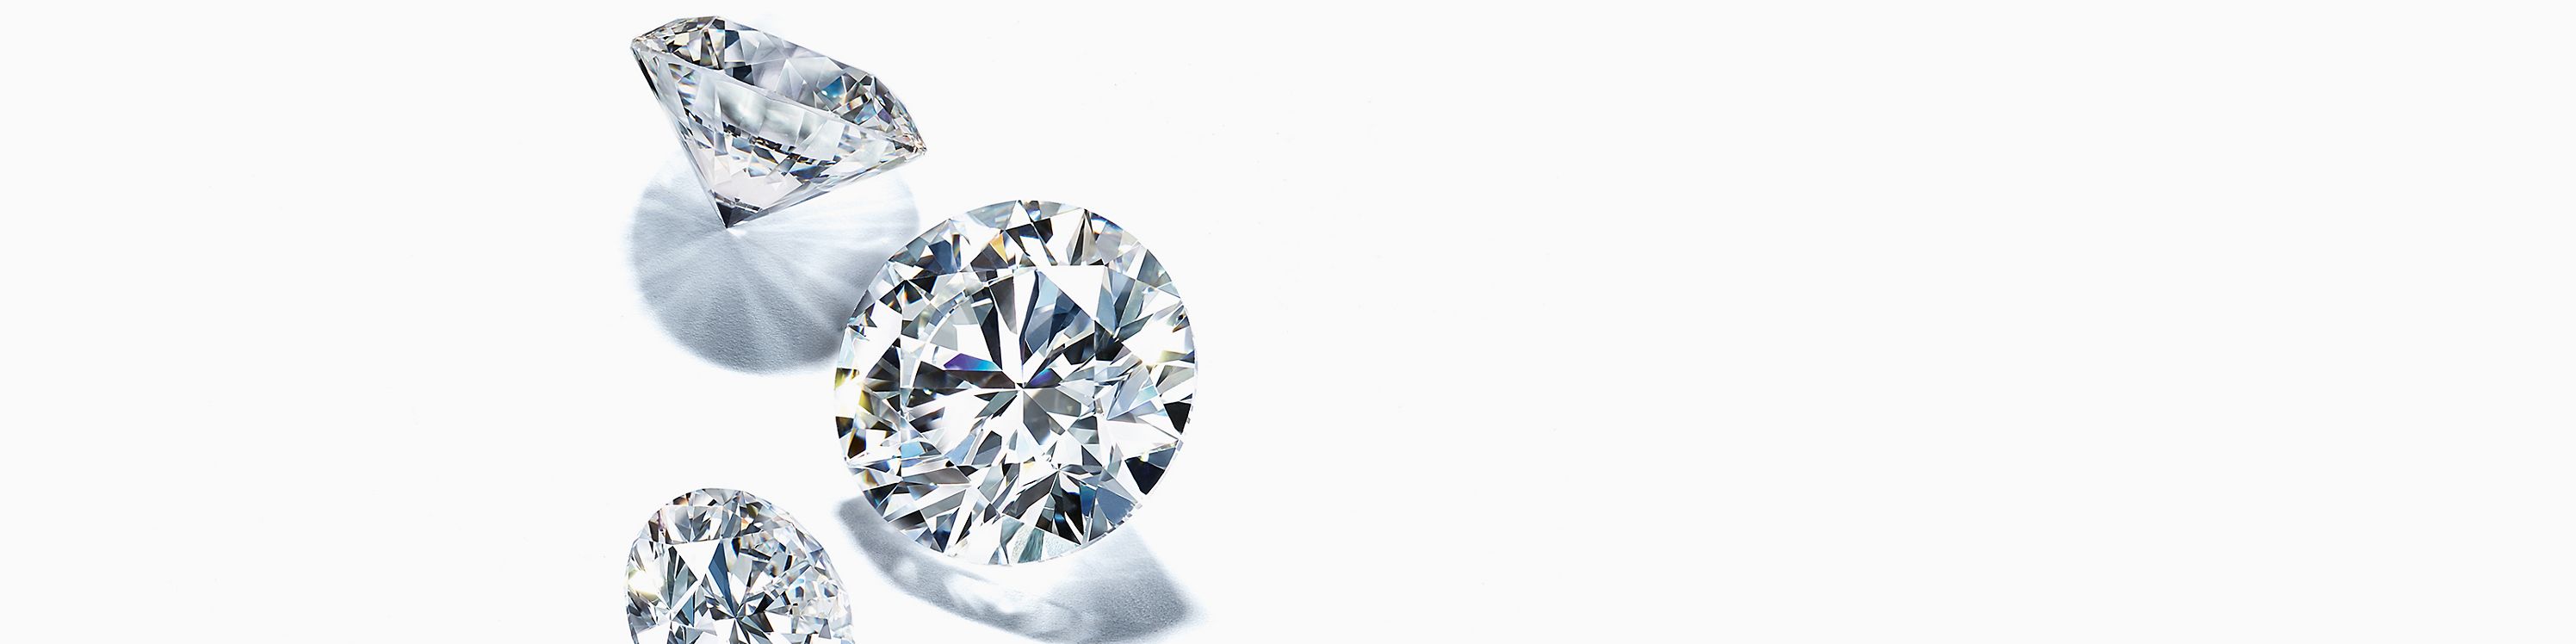 Che cos’è il taglio del diamante?